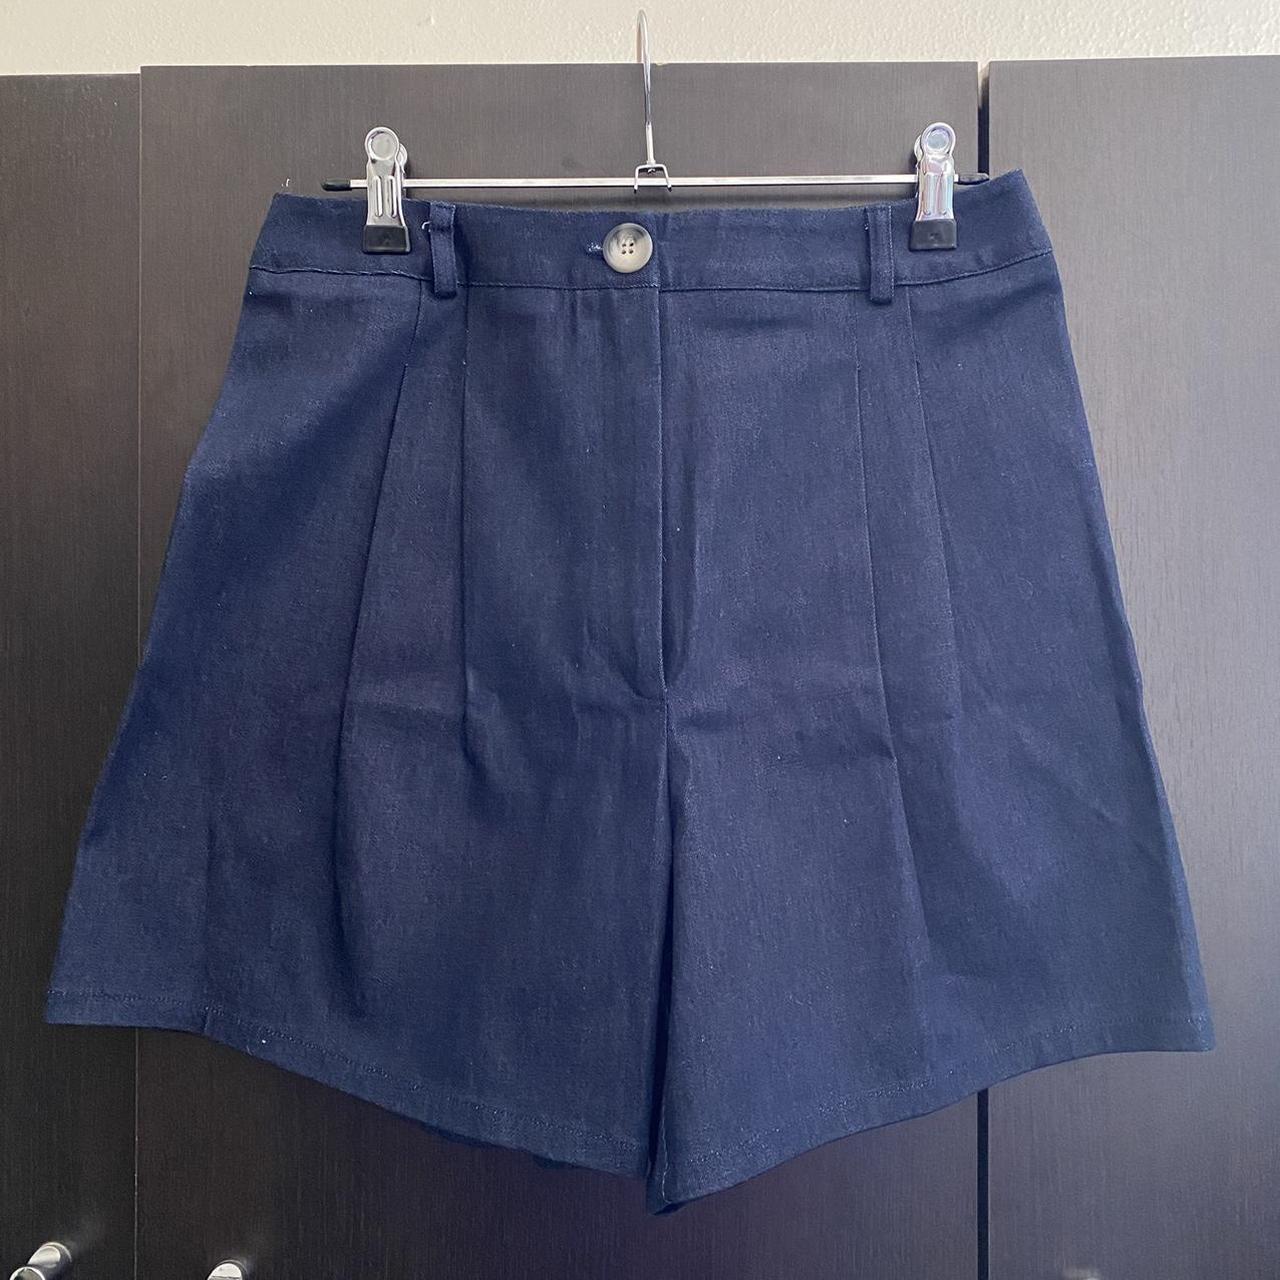 Denim shorts Fme apparel Melbourne brand Size... - Depop